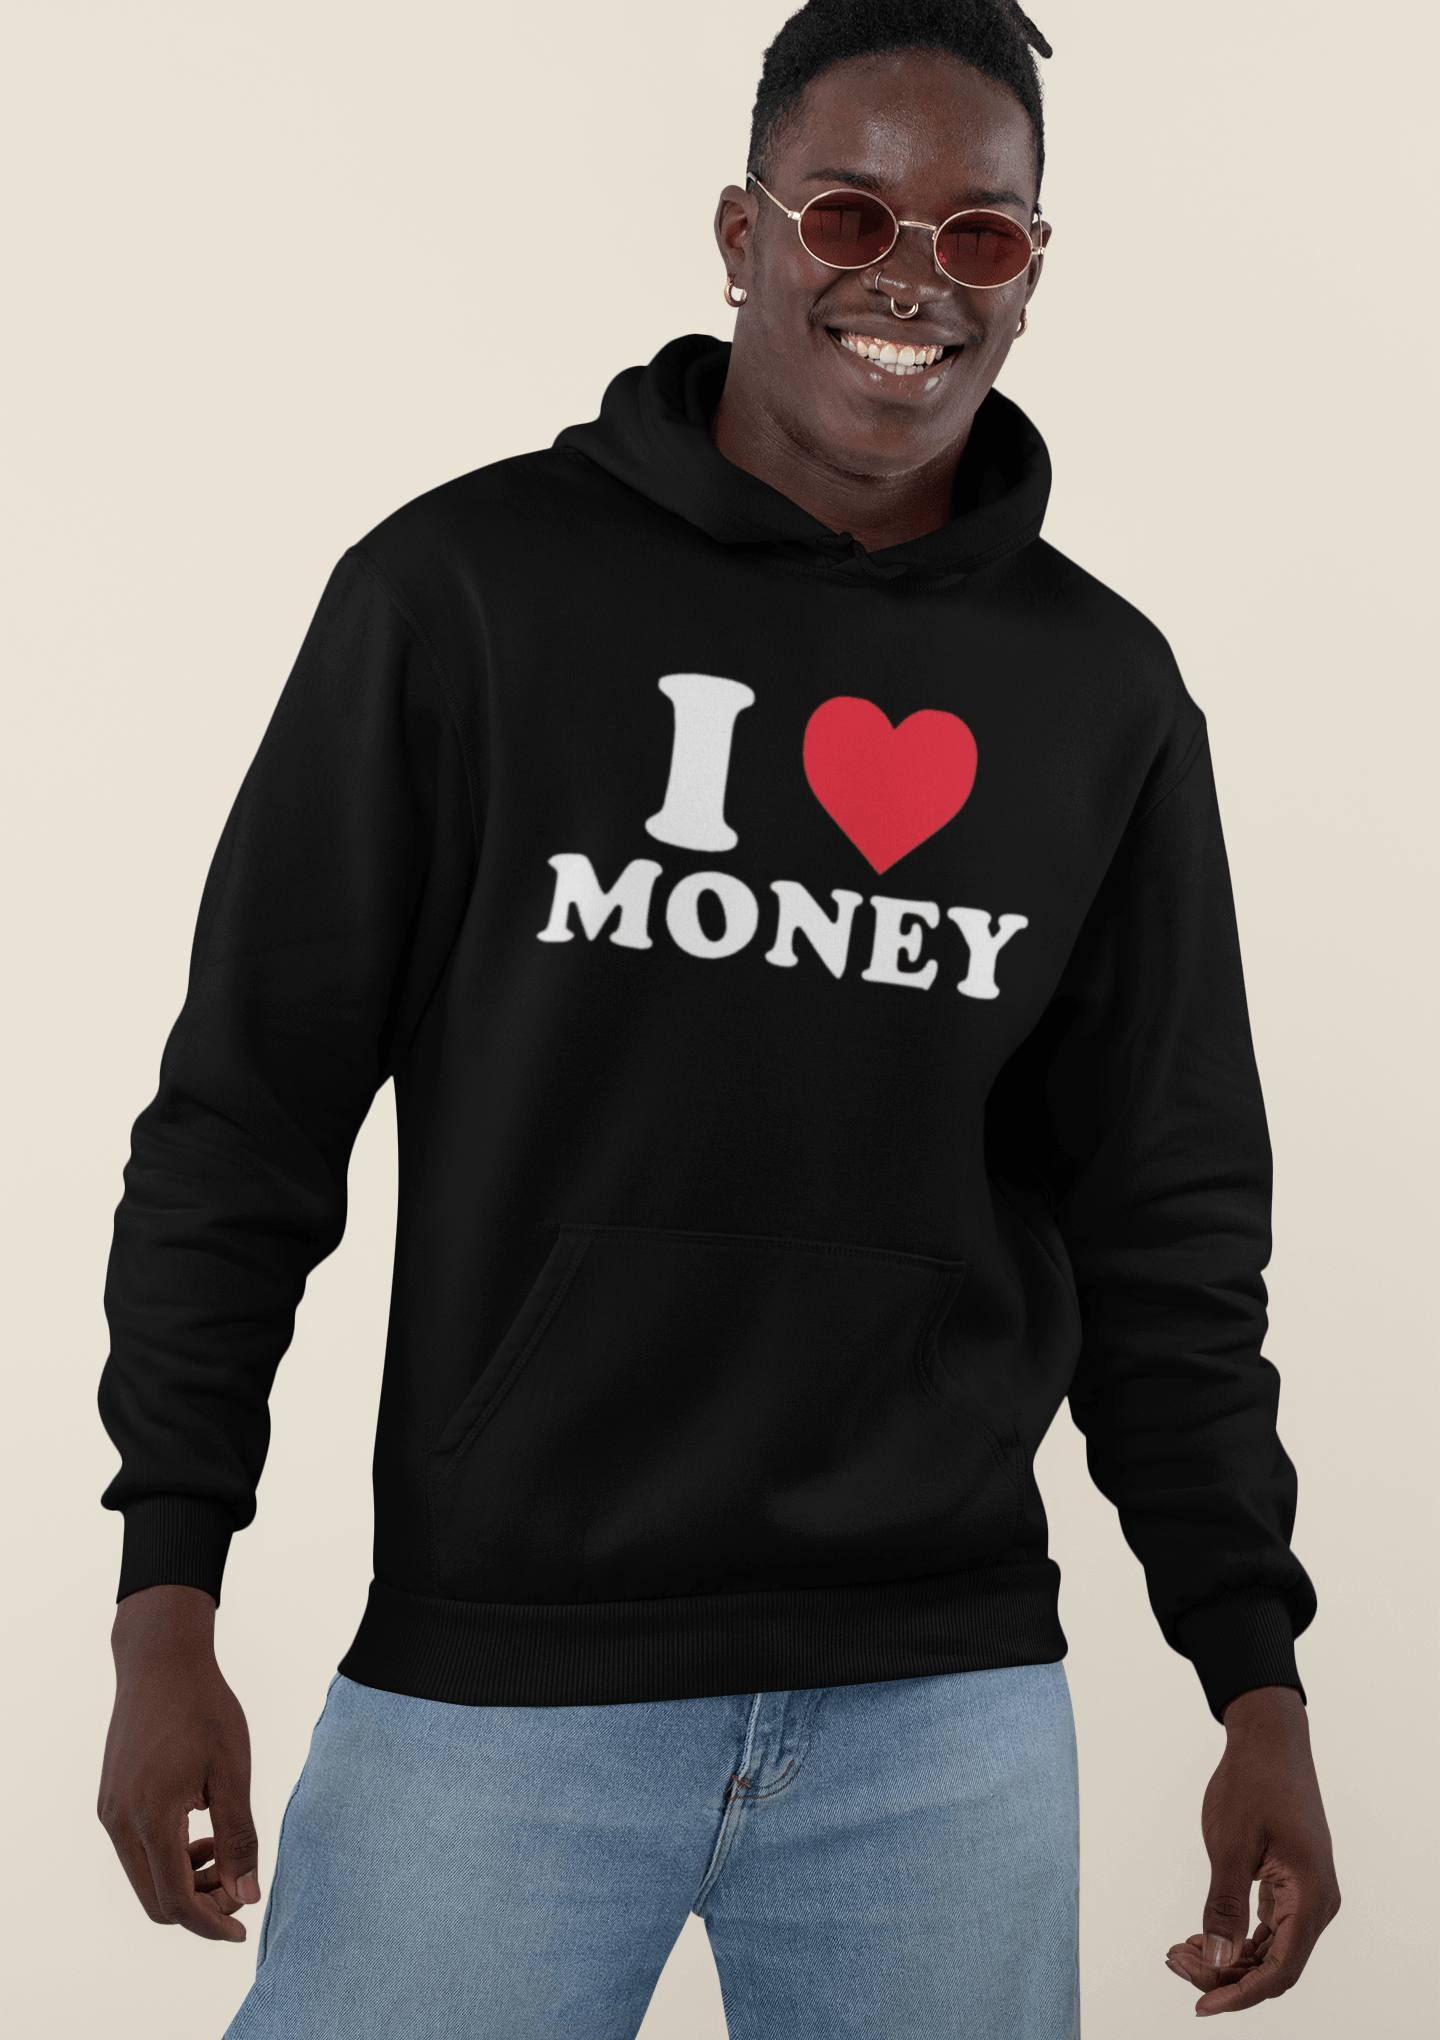 I love Money Top Koala Soft Style Black Unisex Tee - TopKoalaTee